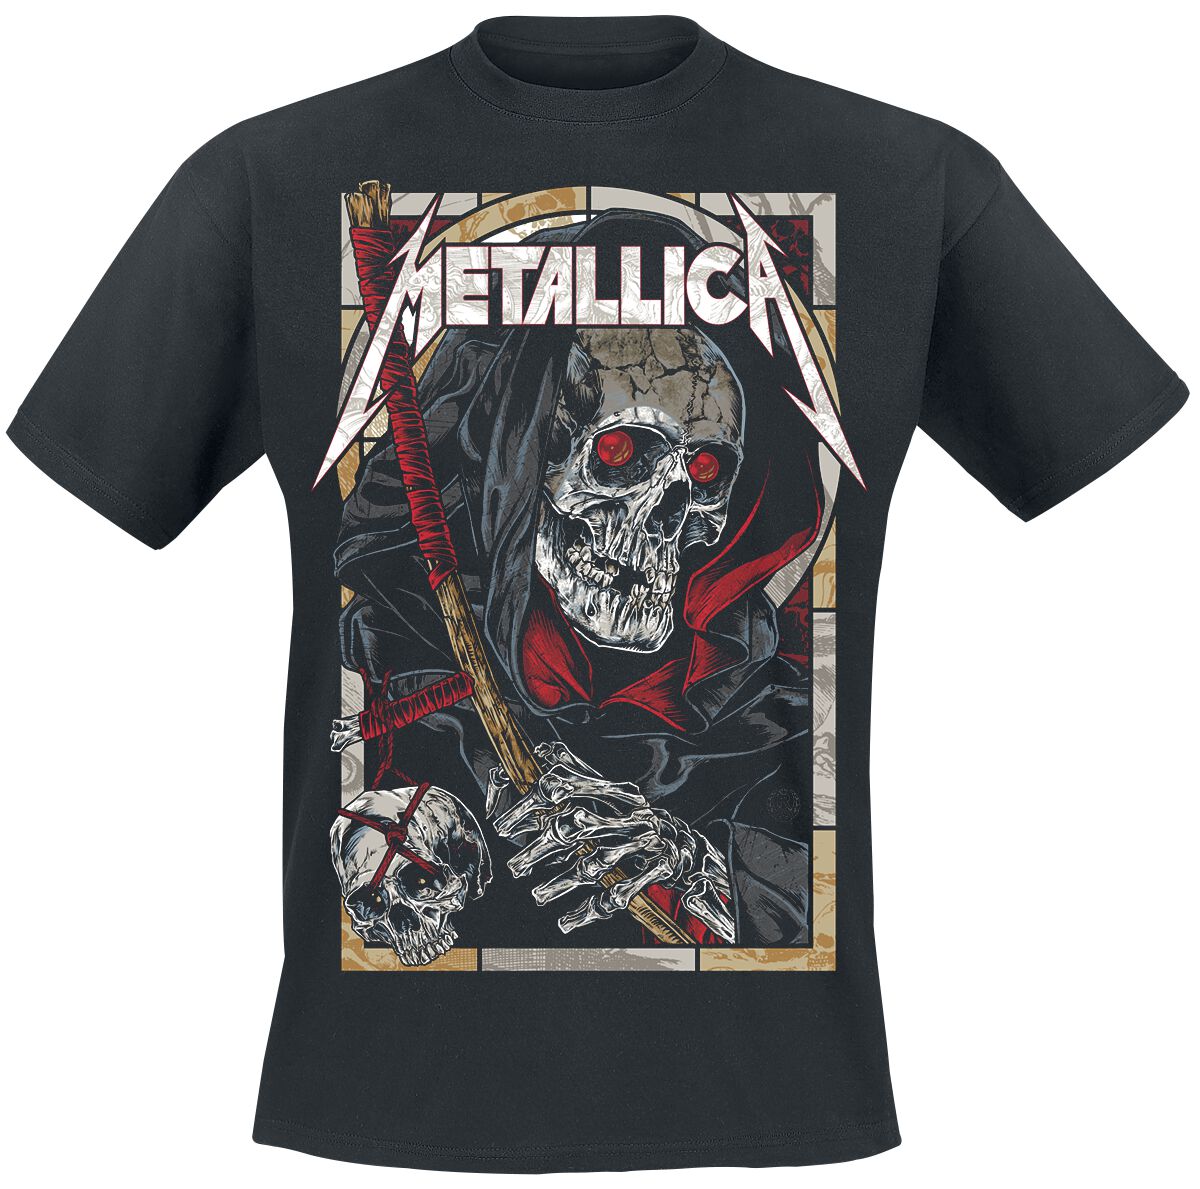 Metallica T-Shirt - Death Reaper - S bis 5XL - für Männer - Größe 4XL - schwarz  - Lizenziertes Merchandise!